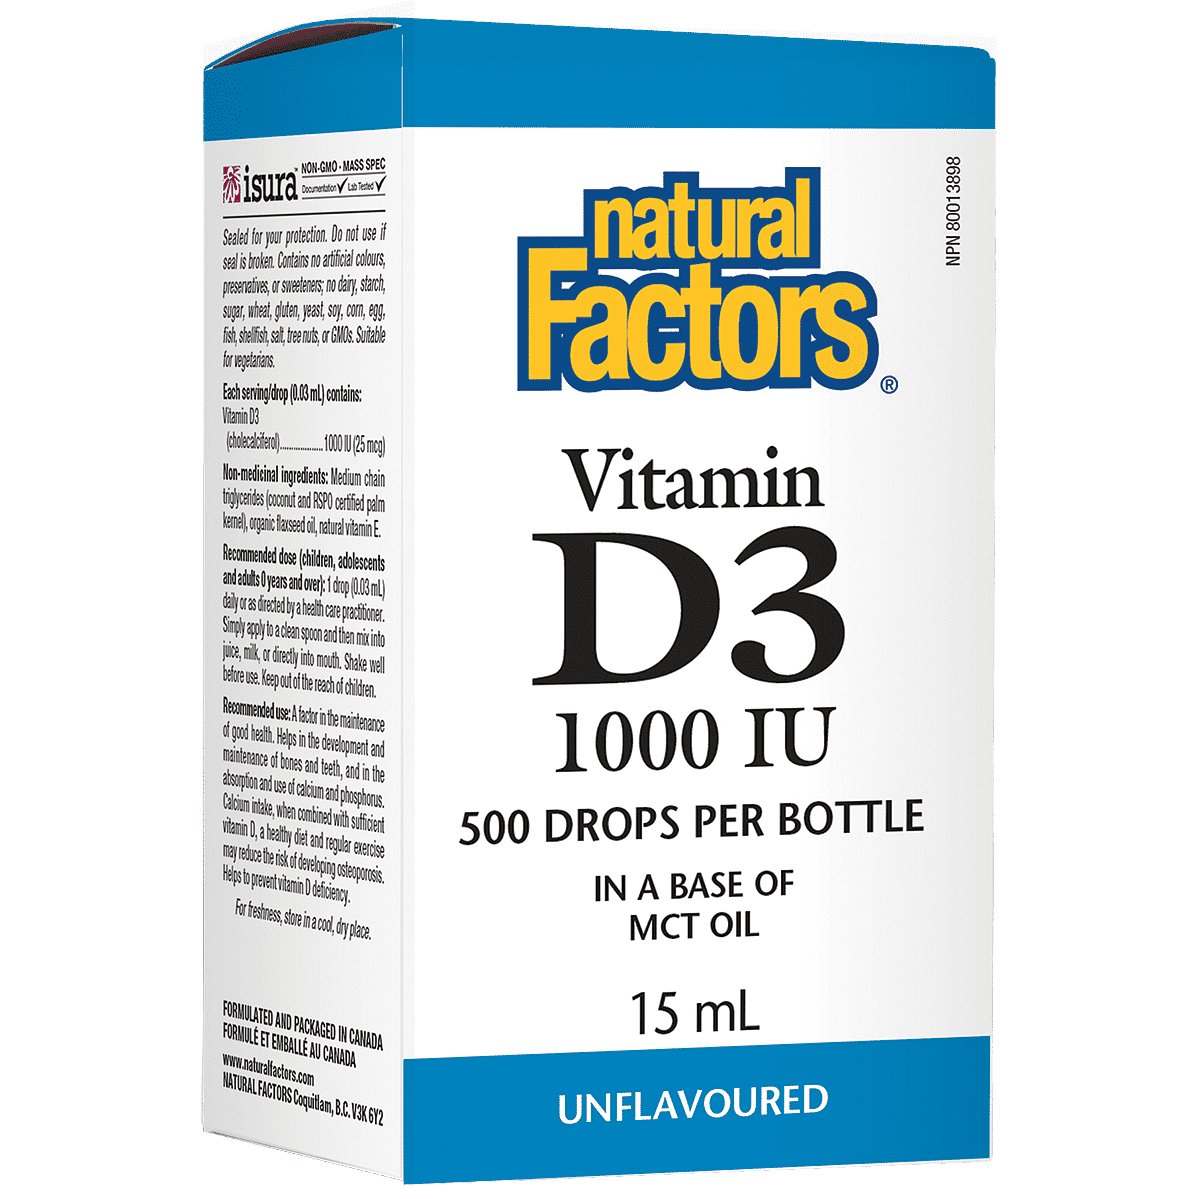 Natural Factors Vitamin D3 Drops 1000 IU, 15mL